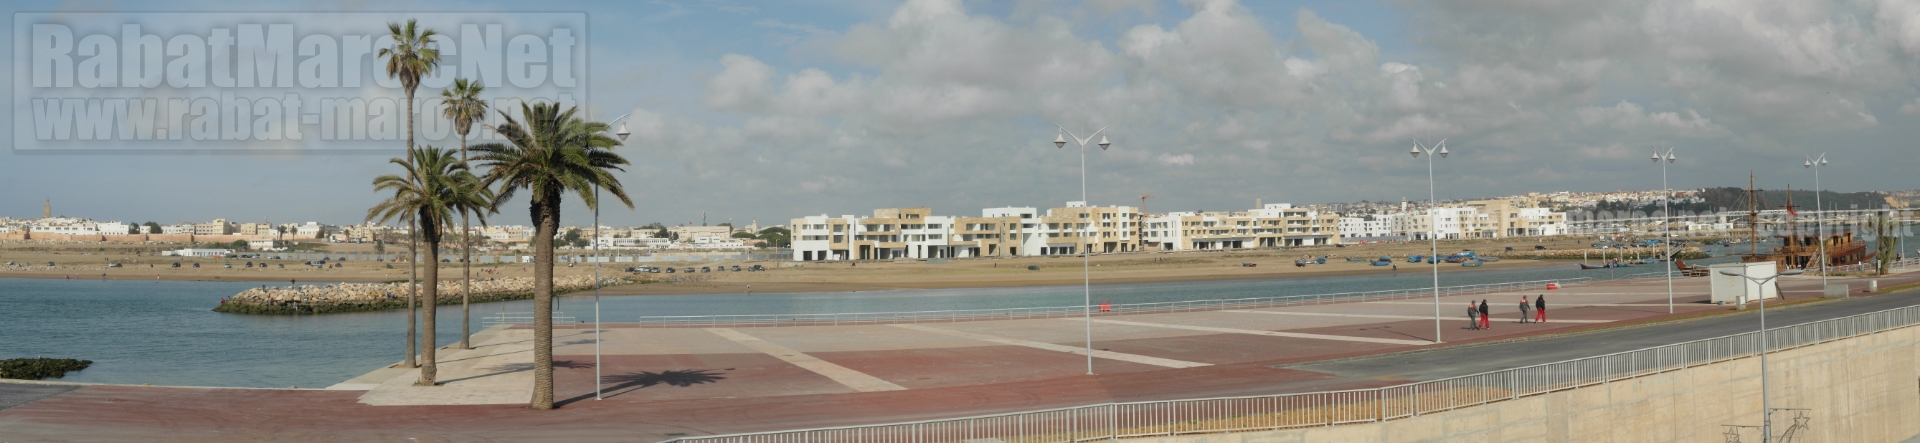 Panorama Bab Al Bahr depuis quais du port de Rabat